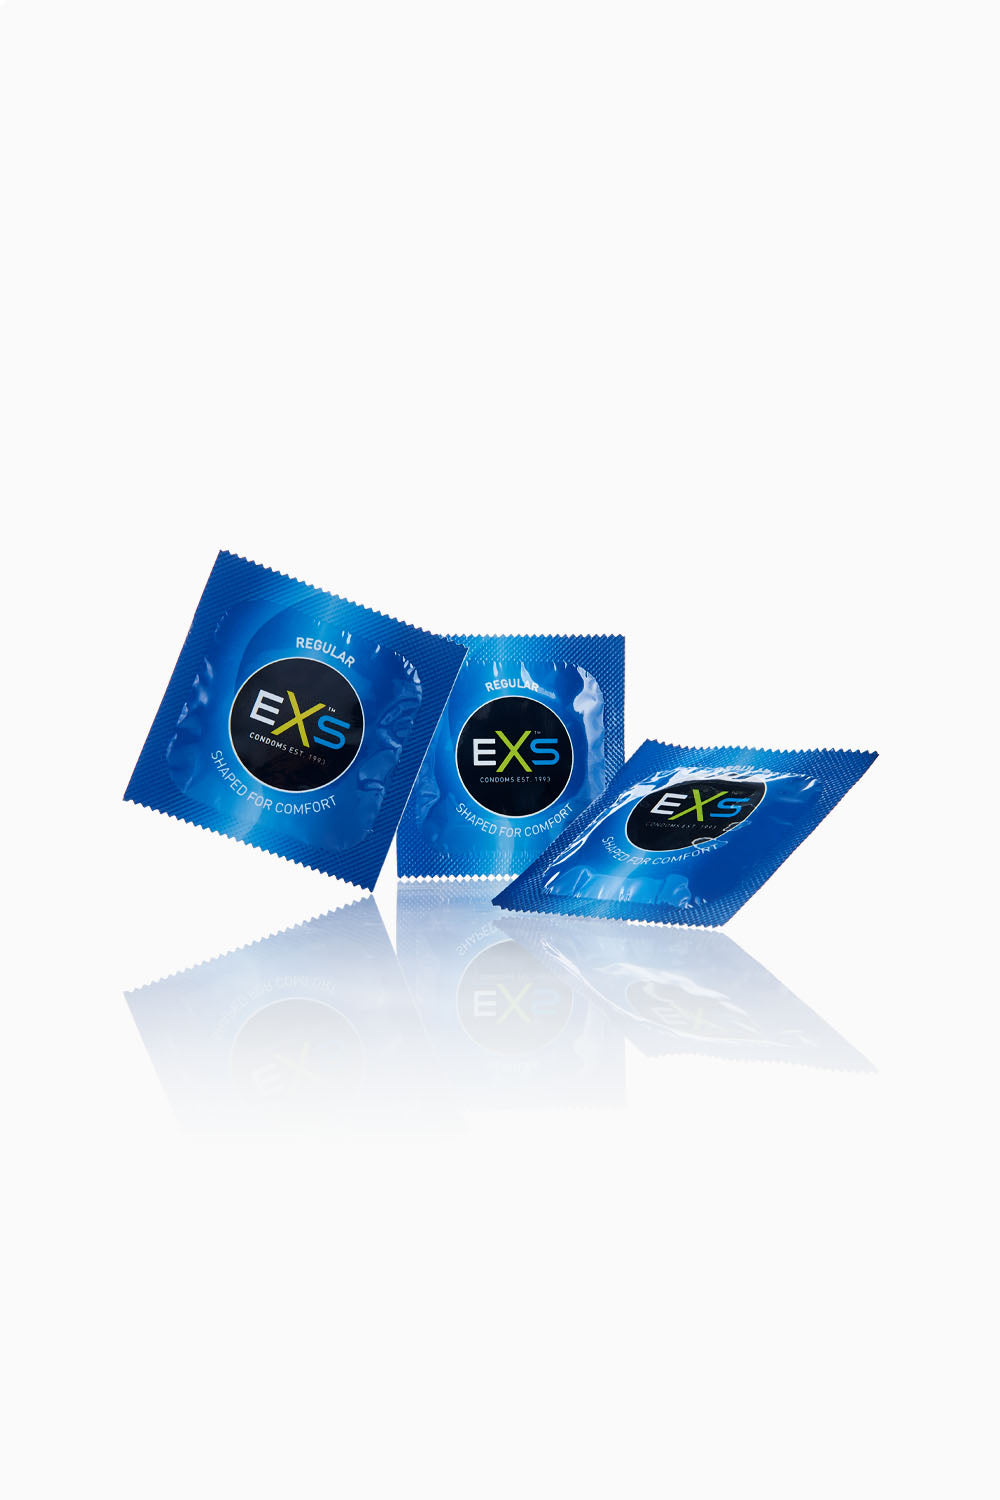 EXS Regular Condoms 100 Pack